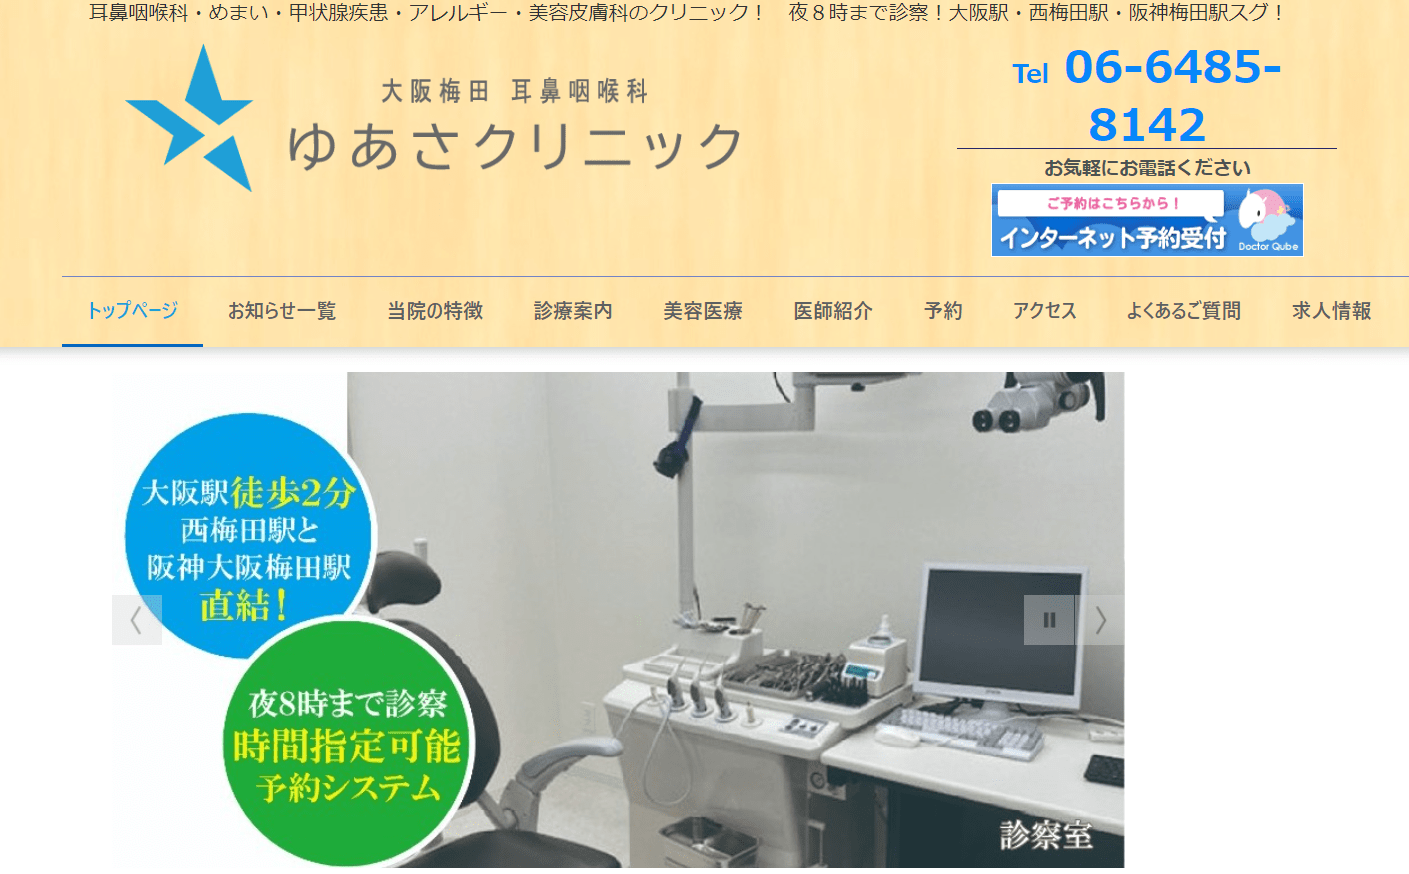 大阪市で評判の耳鼻咽喉科クリニック10選 耳鼻咽喉科 ゆあさクリニック